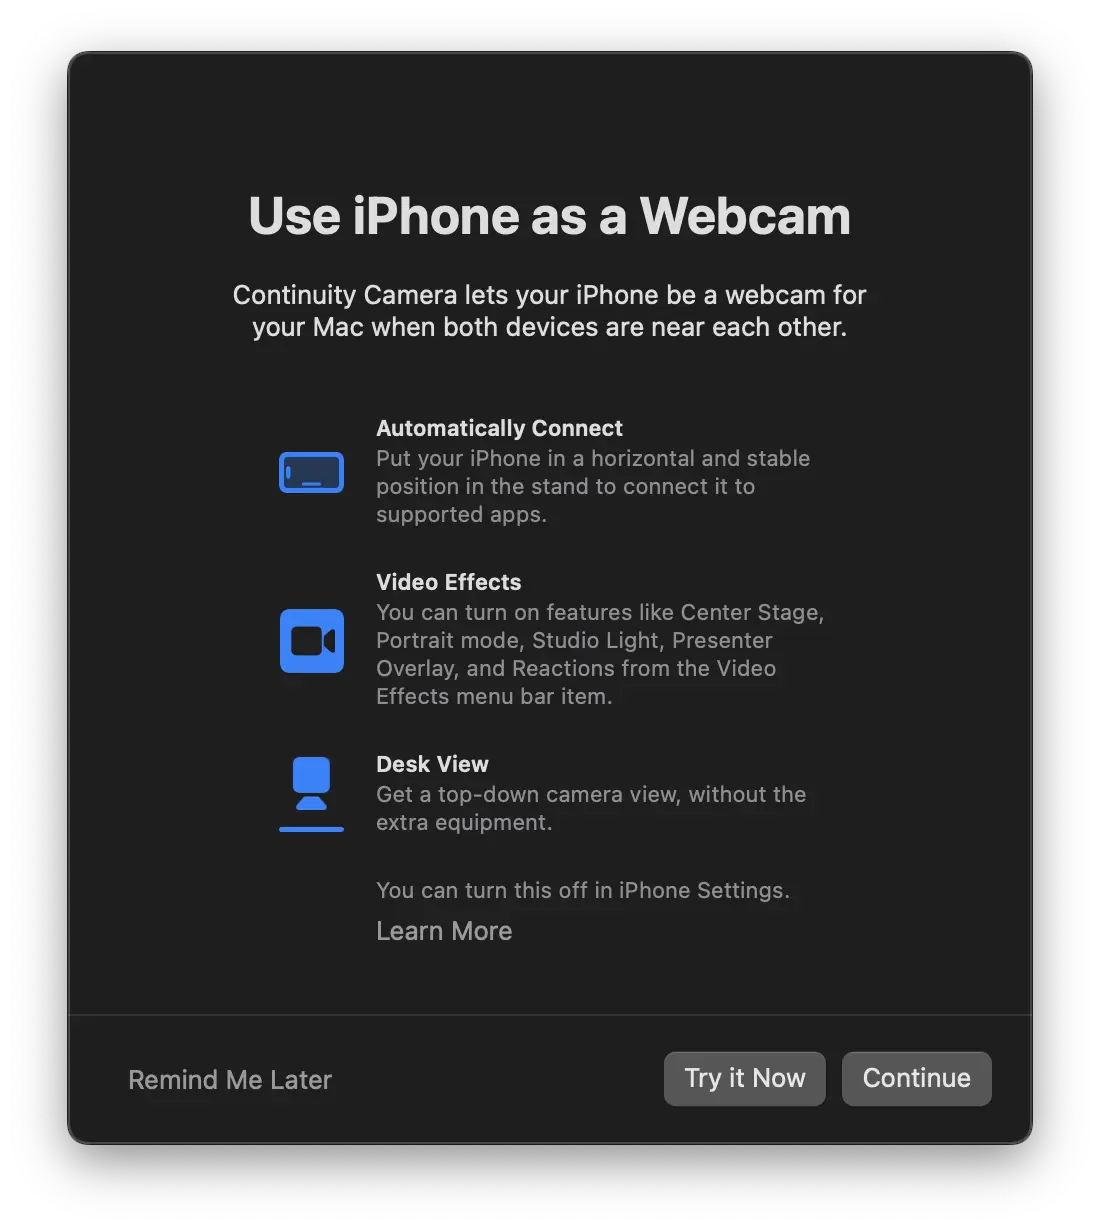 So verwenden Sie Ihr iPhone als Webcam für Mac in den Anrufen FaceTime